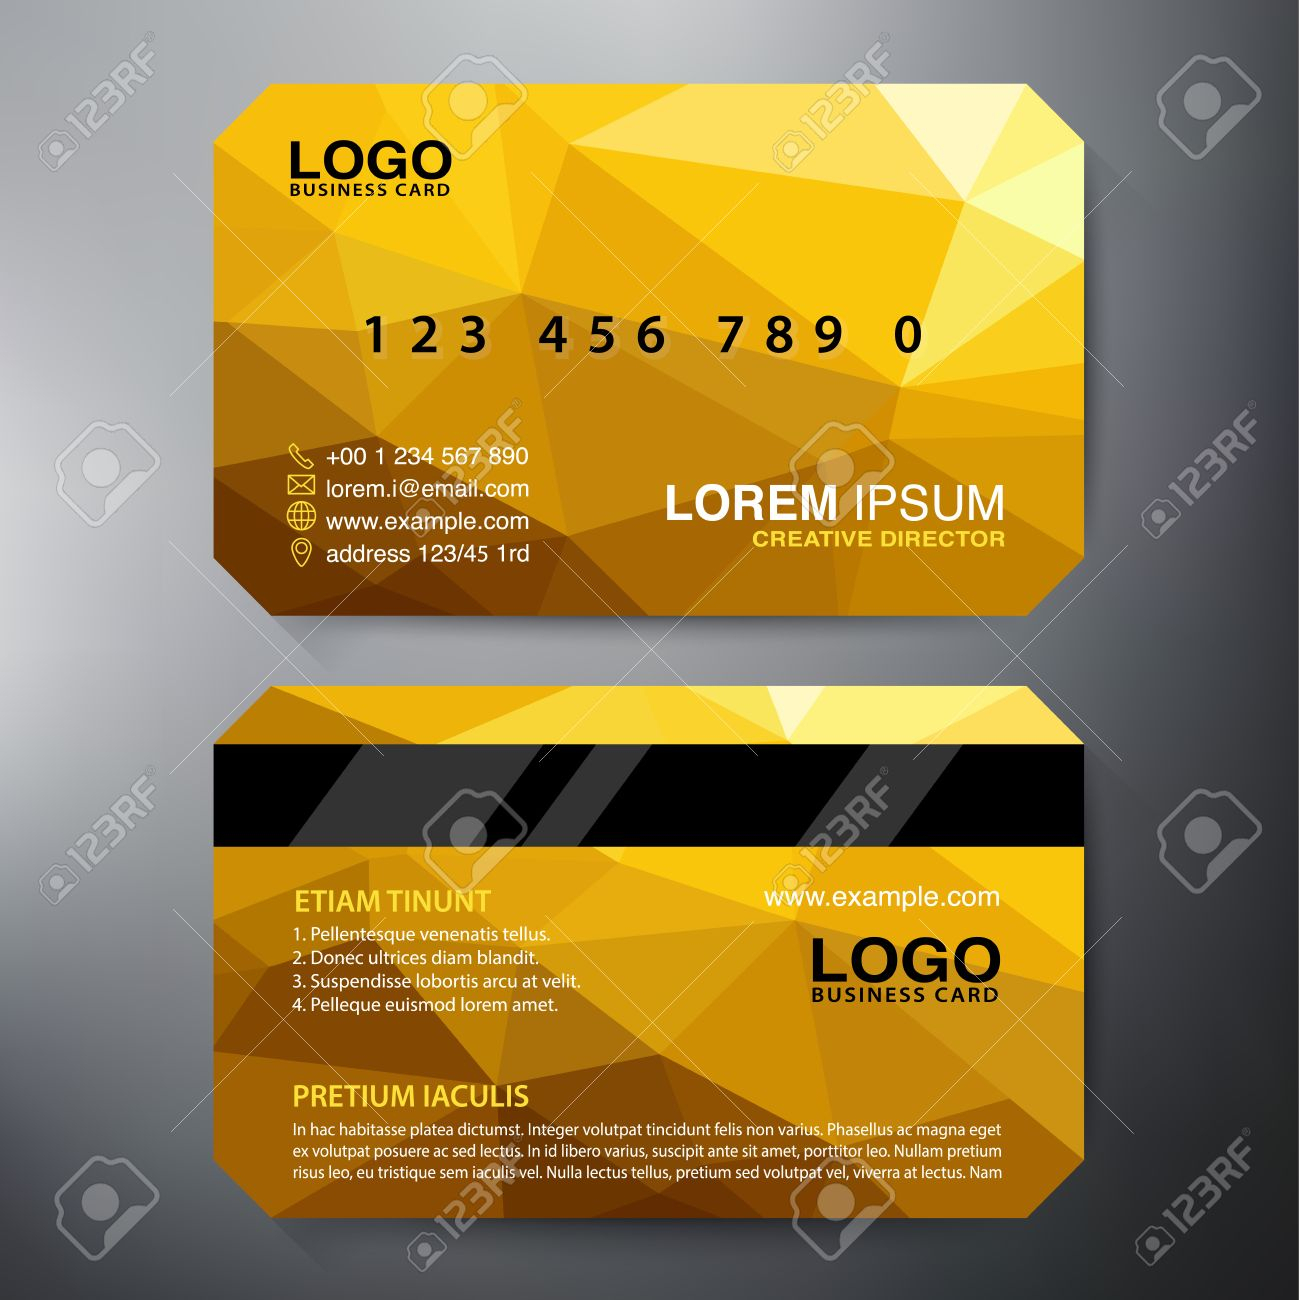 Modern Business Card Design Template. Vector Illustration In Modern Business Card Design Templates